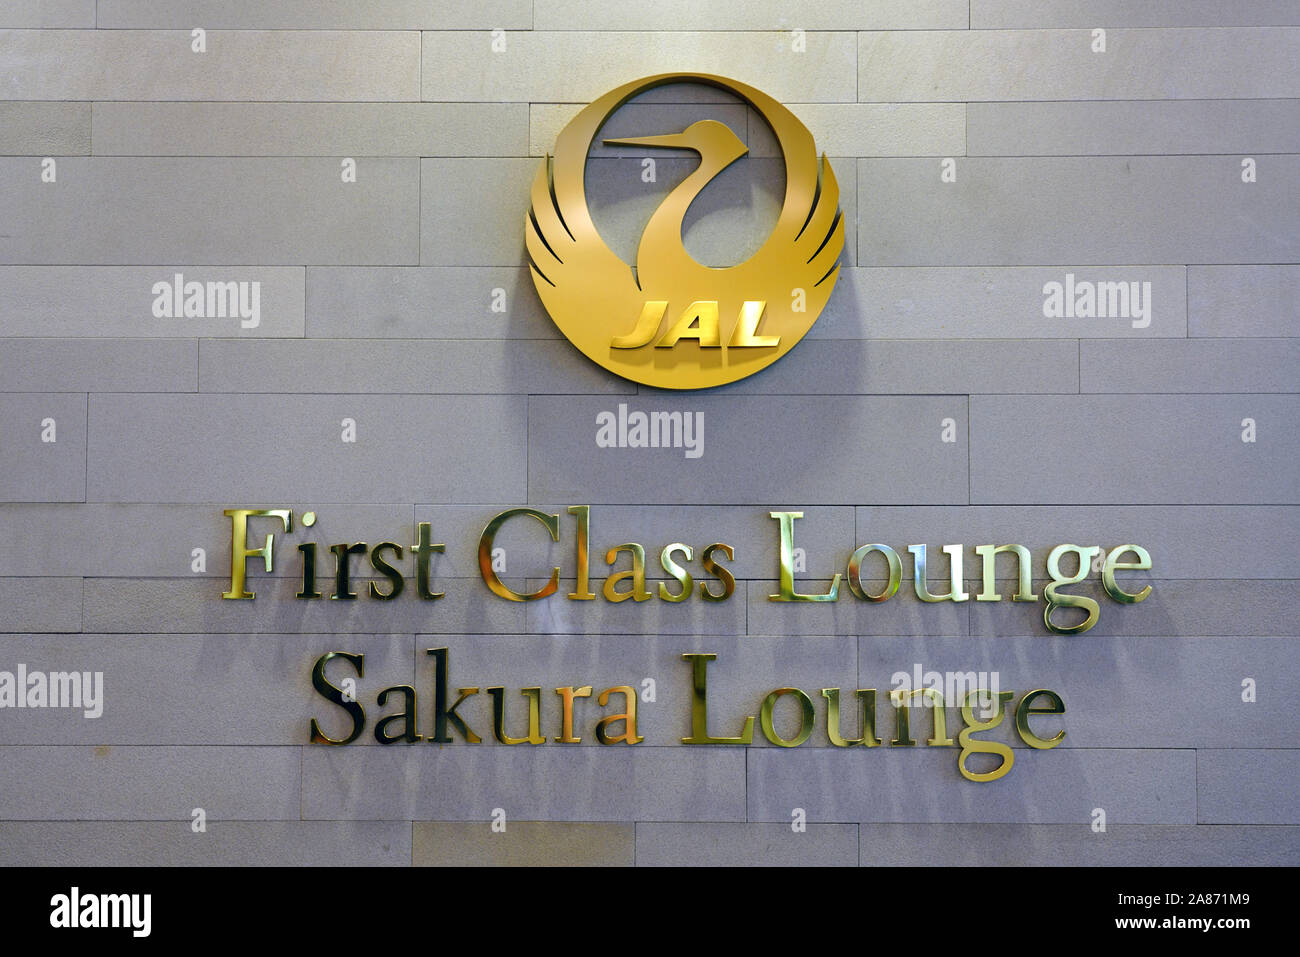 TOKYO, JAPON - 3 NOV 2019- Vue de la première classe Sakura Lounge de Japan Airlines (JL) à l'intérieur de l'aérogare à l'aéroport international Narita de Tokyo Banque D'Images